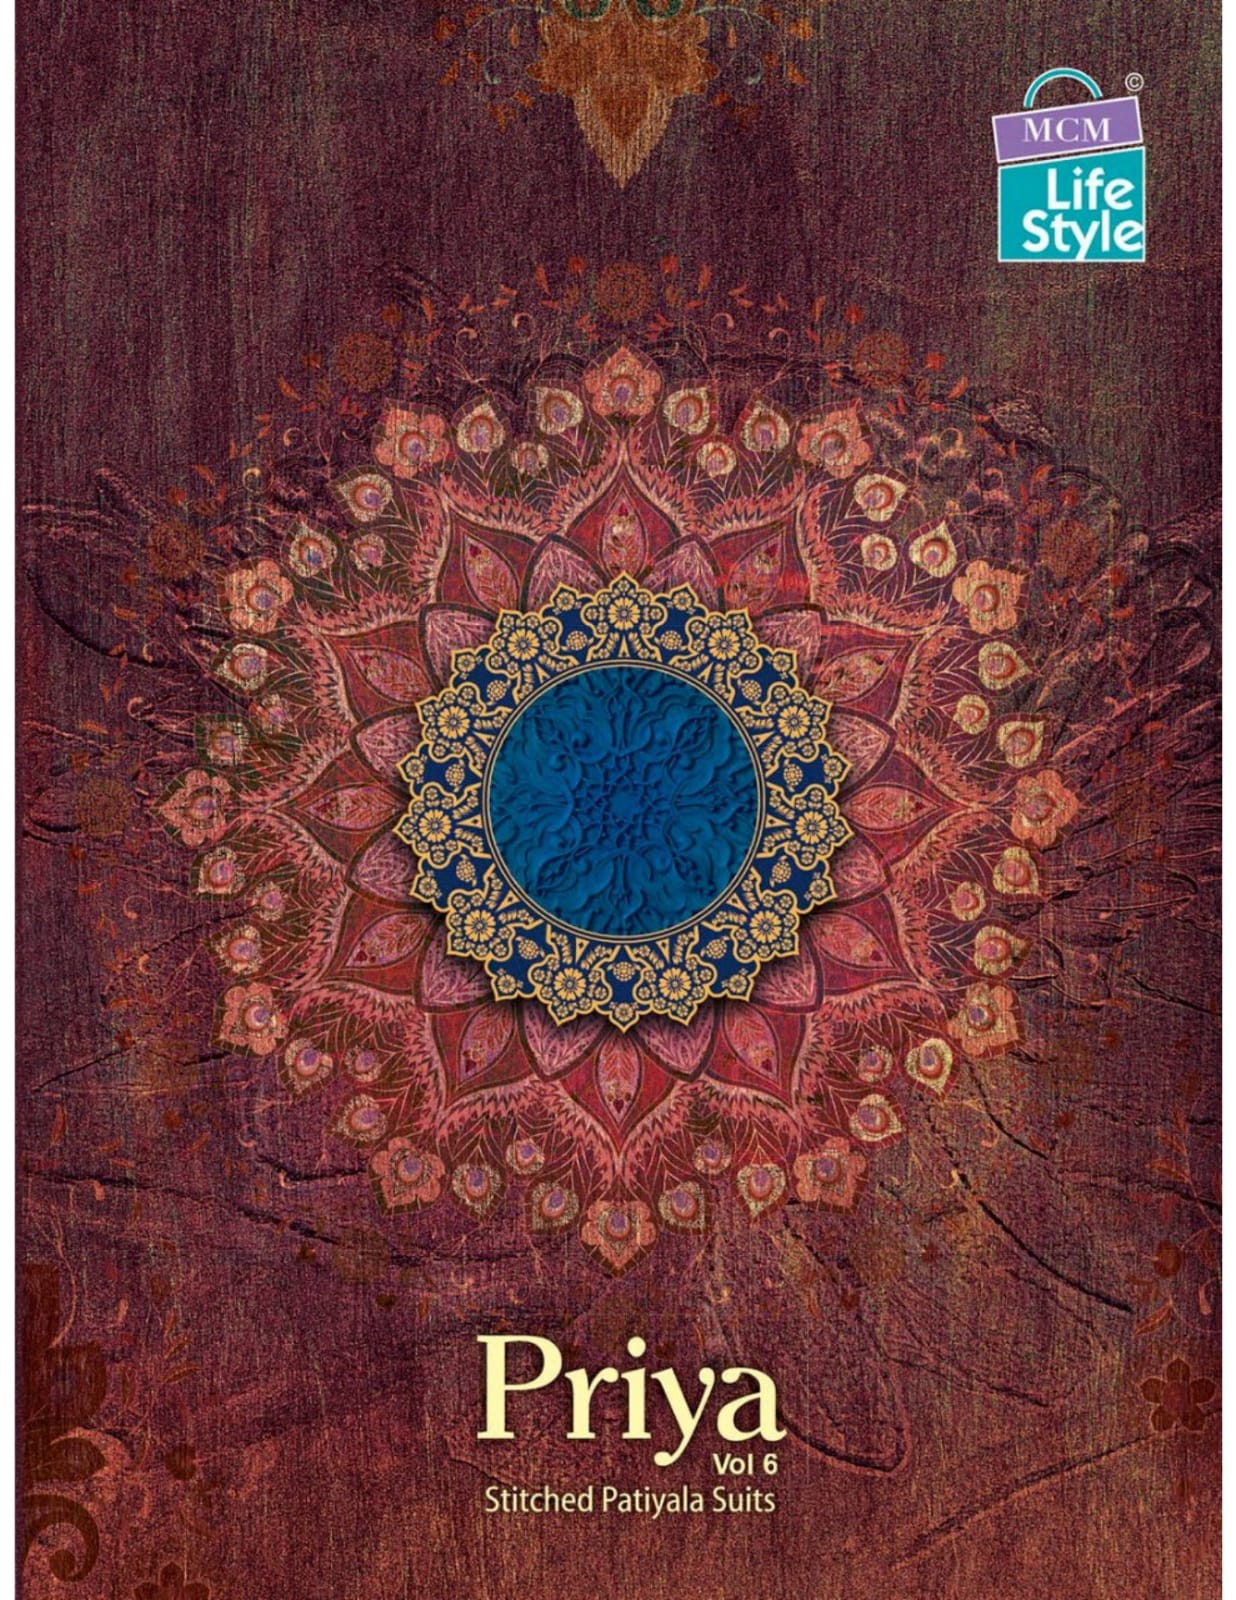 Mcm Lifestyle Priya Vol 6 Cotton Printed Regular Wear Patiya...